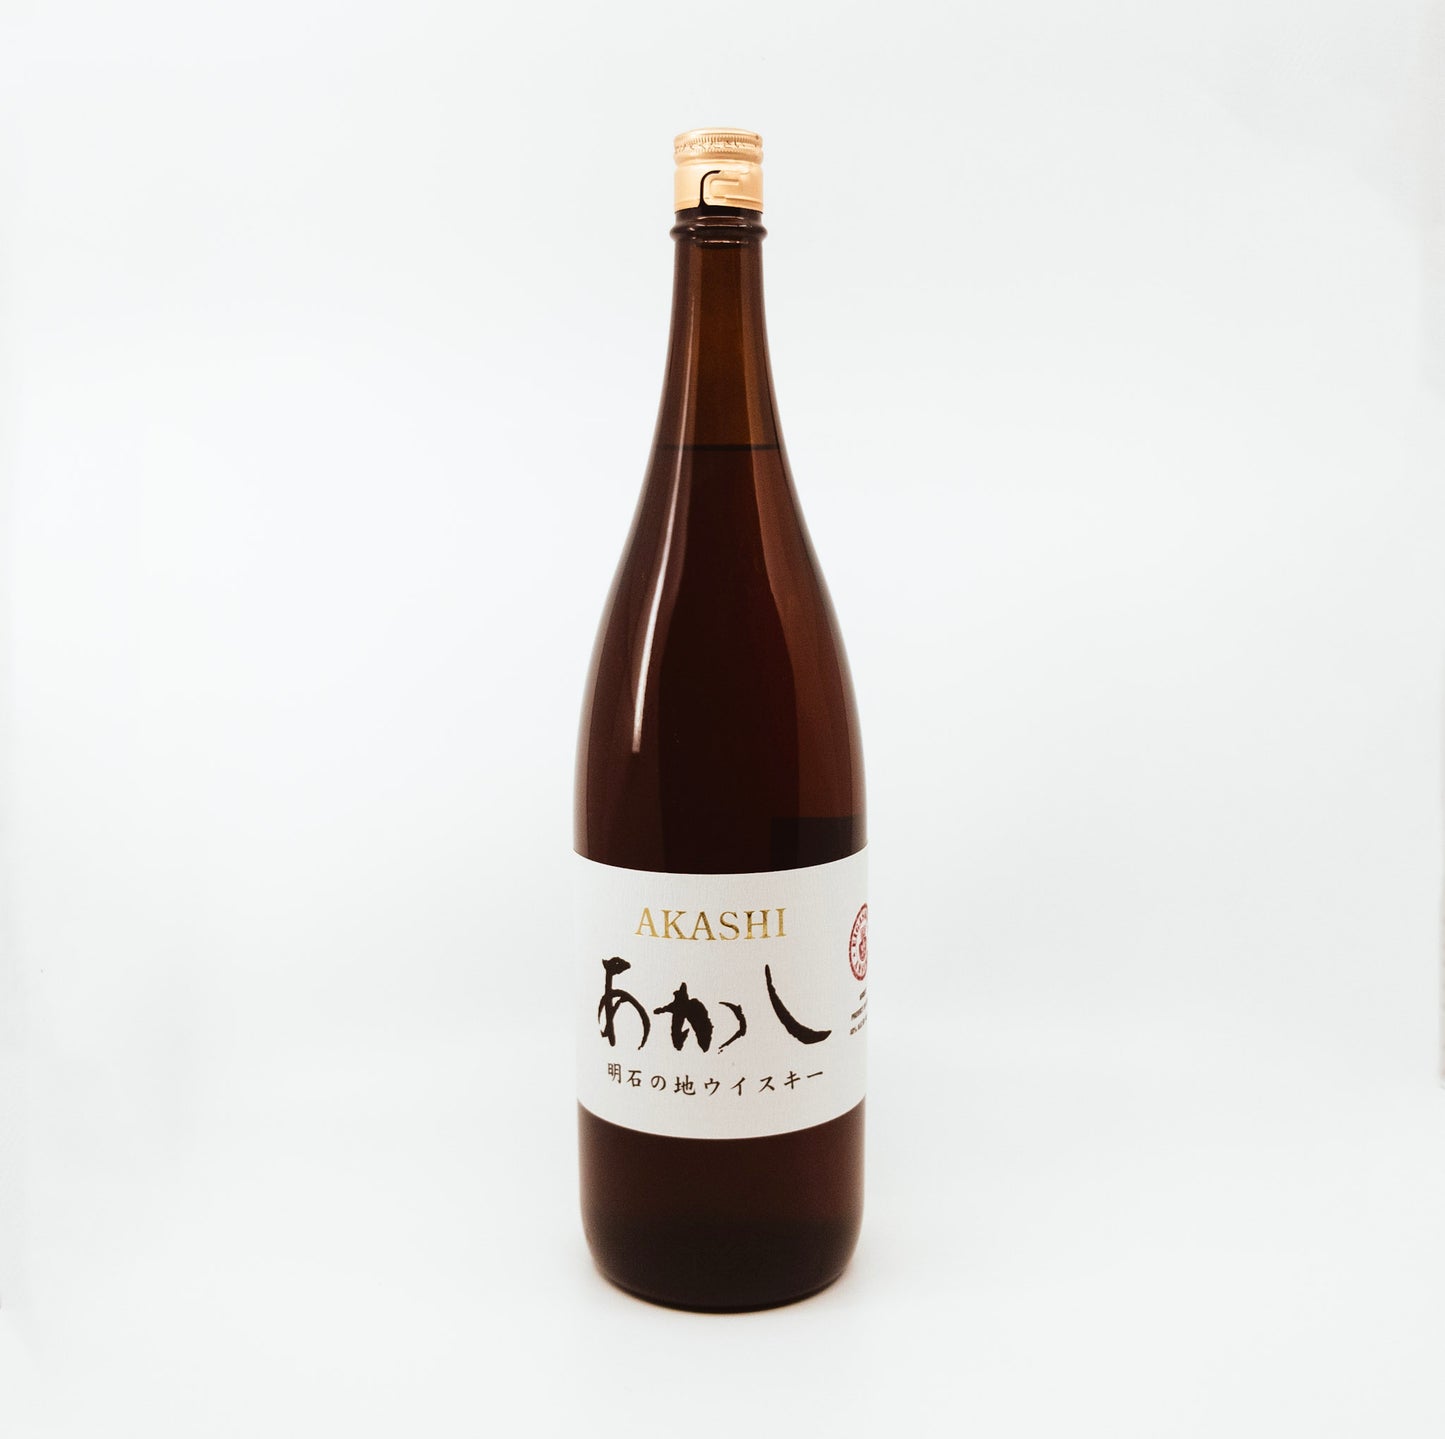 bottle of akashi with white label